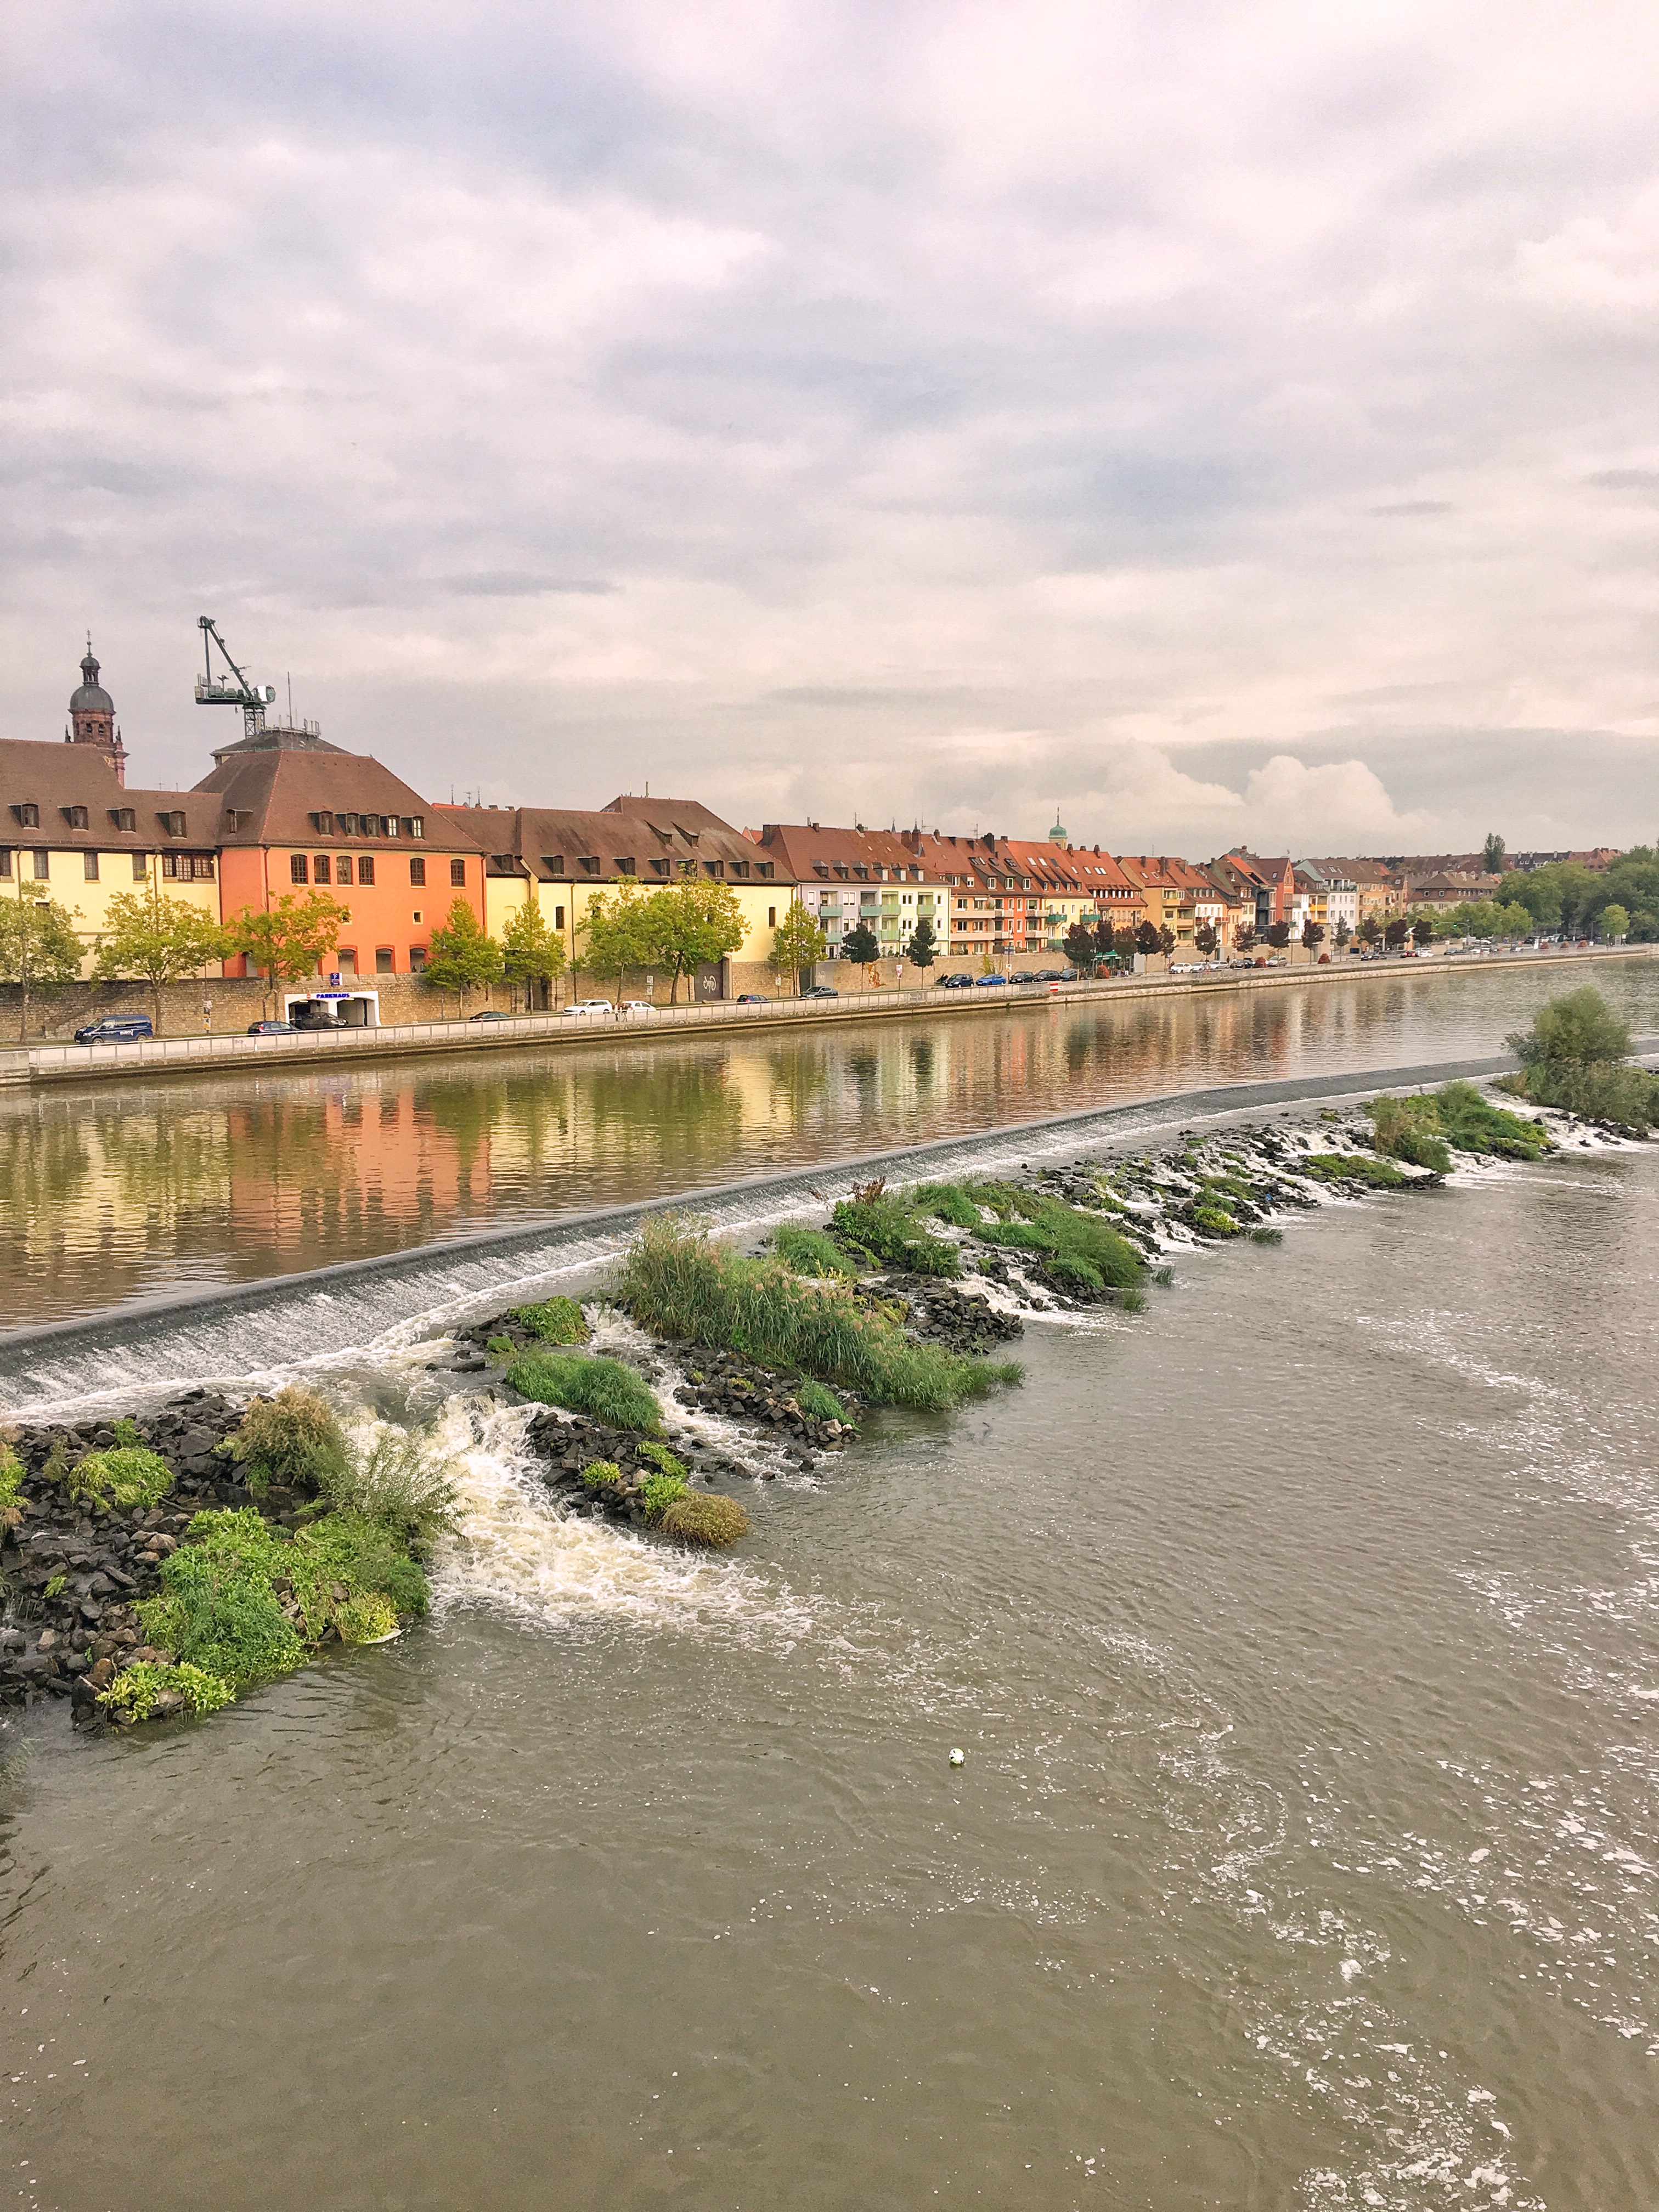 River Main in Wurzburg